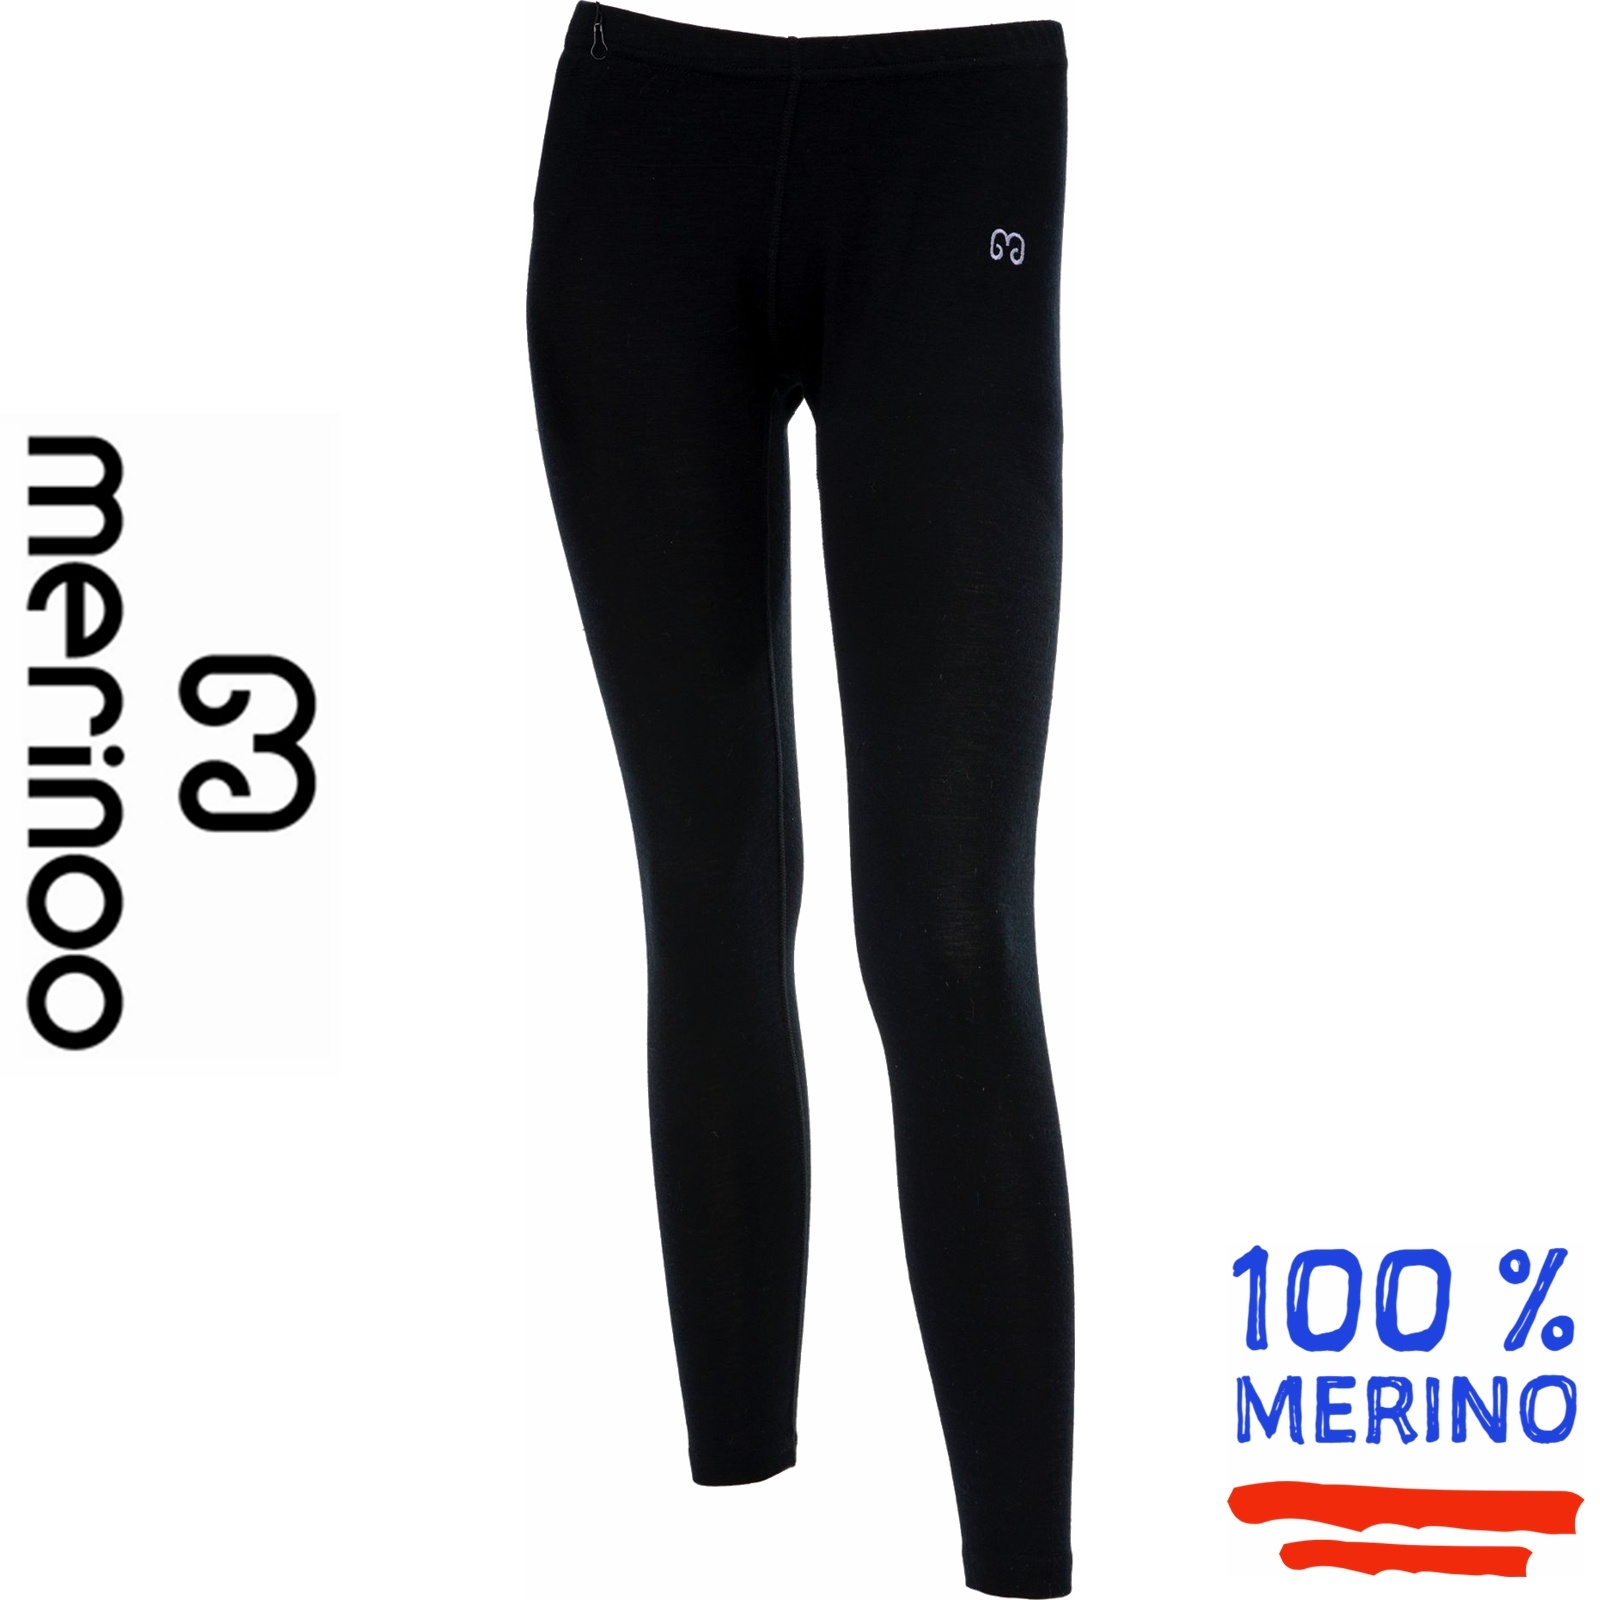 Merinoo (100 merinowol) Merinoo | 200 | Dames thermobroek